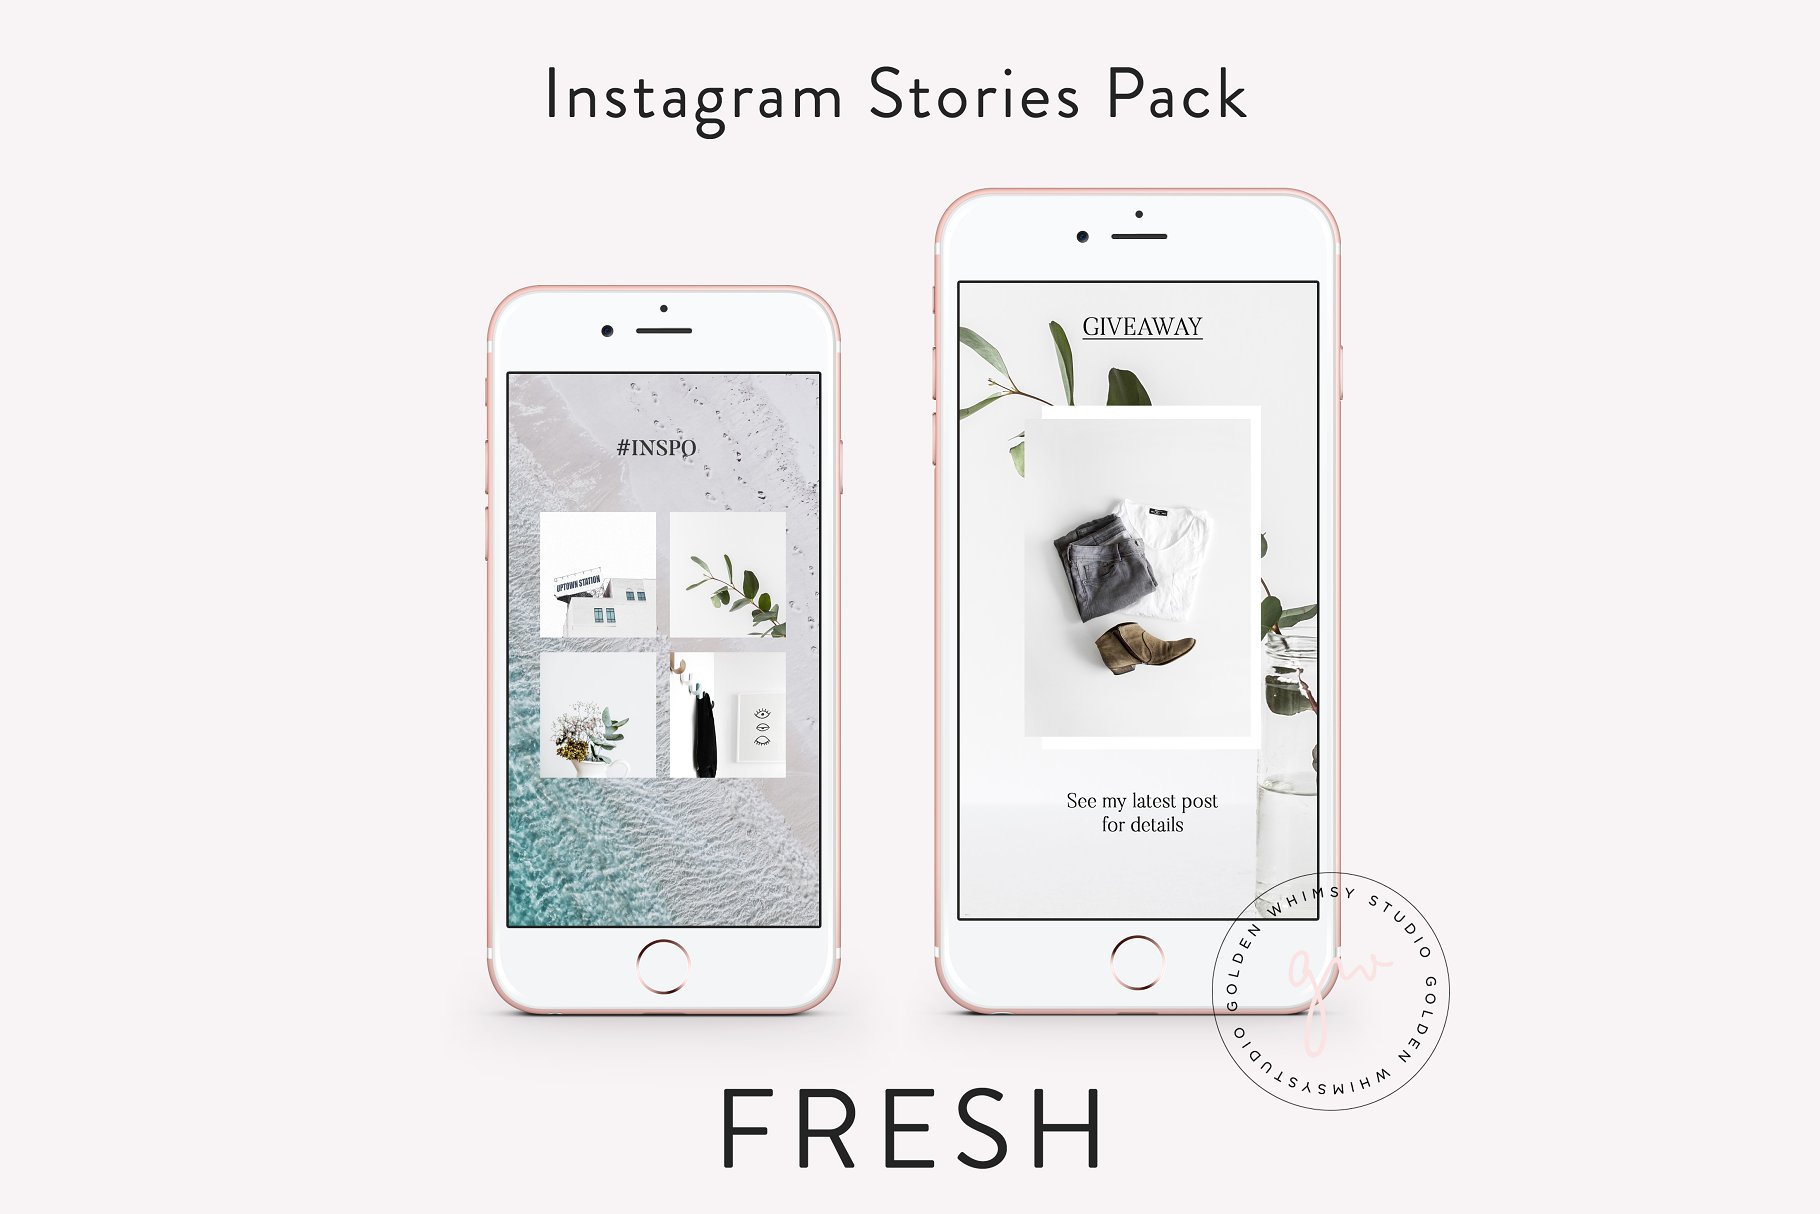 时尚干净利落的Instagram故事贴图模板非凡图库精选 FRESH Insta Stories插图